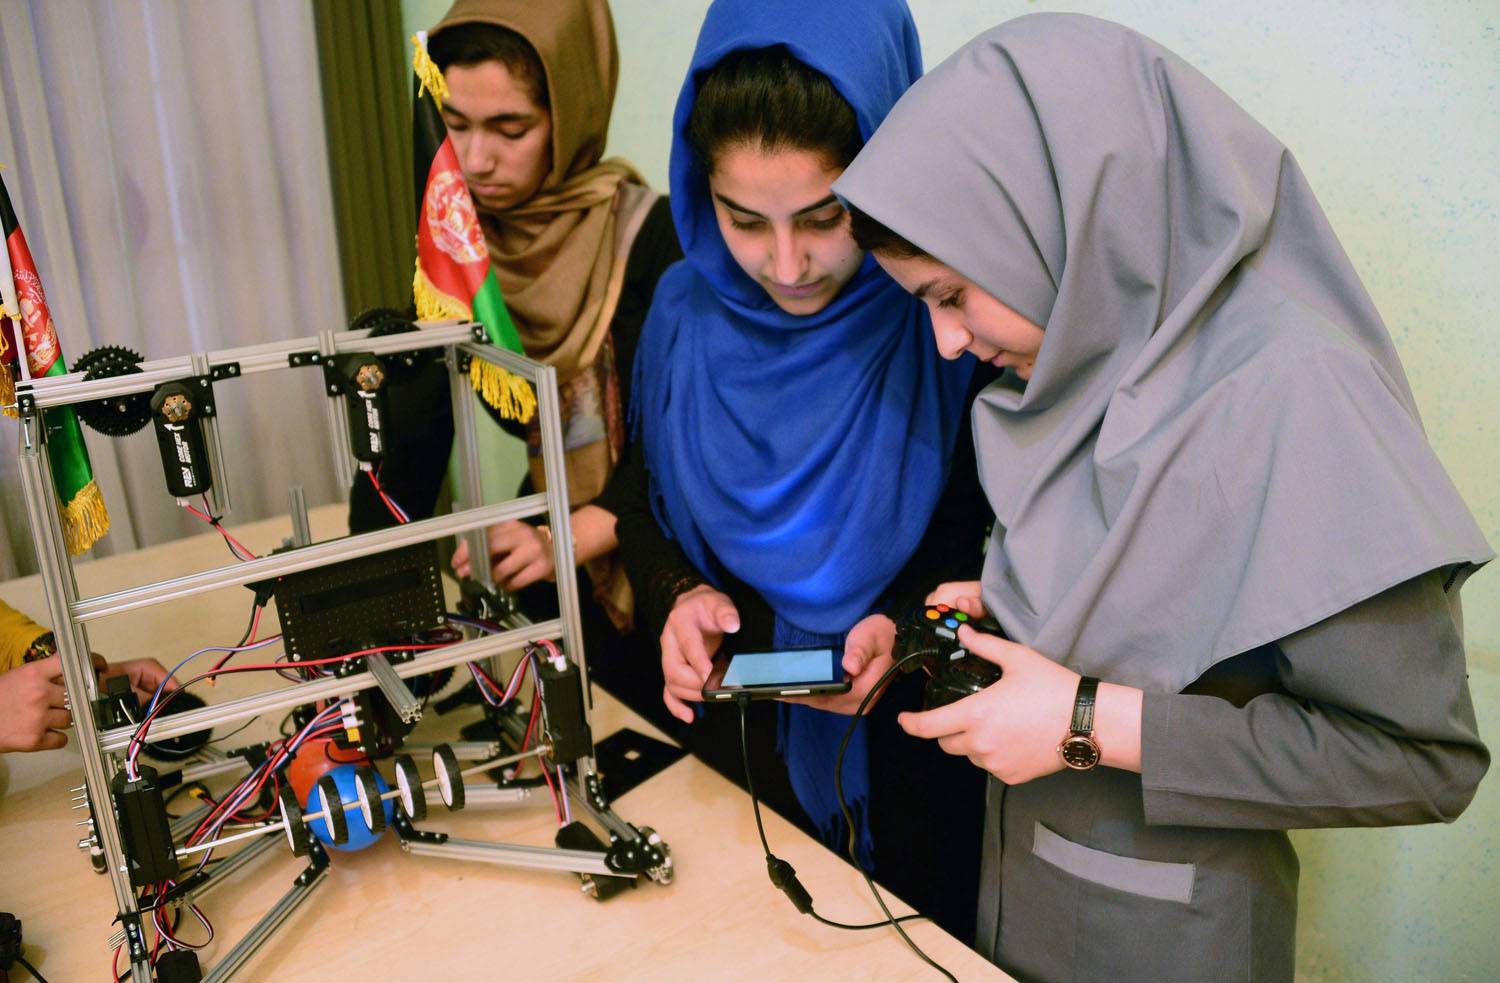 Afghan girls to attend US robotics clash after visa U-turn